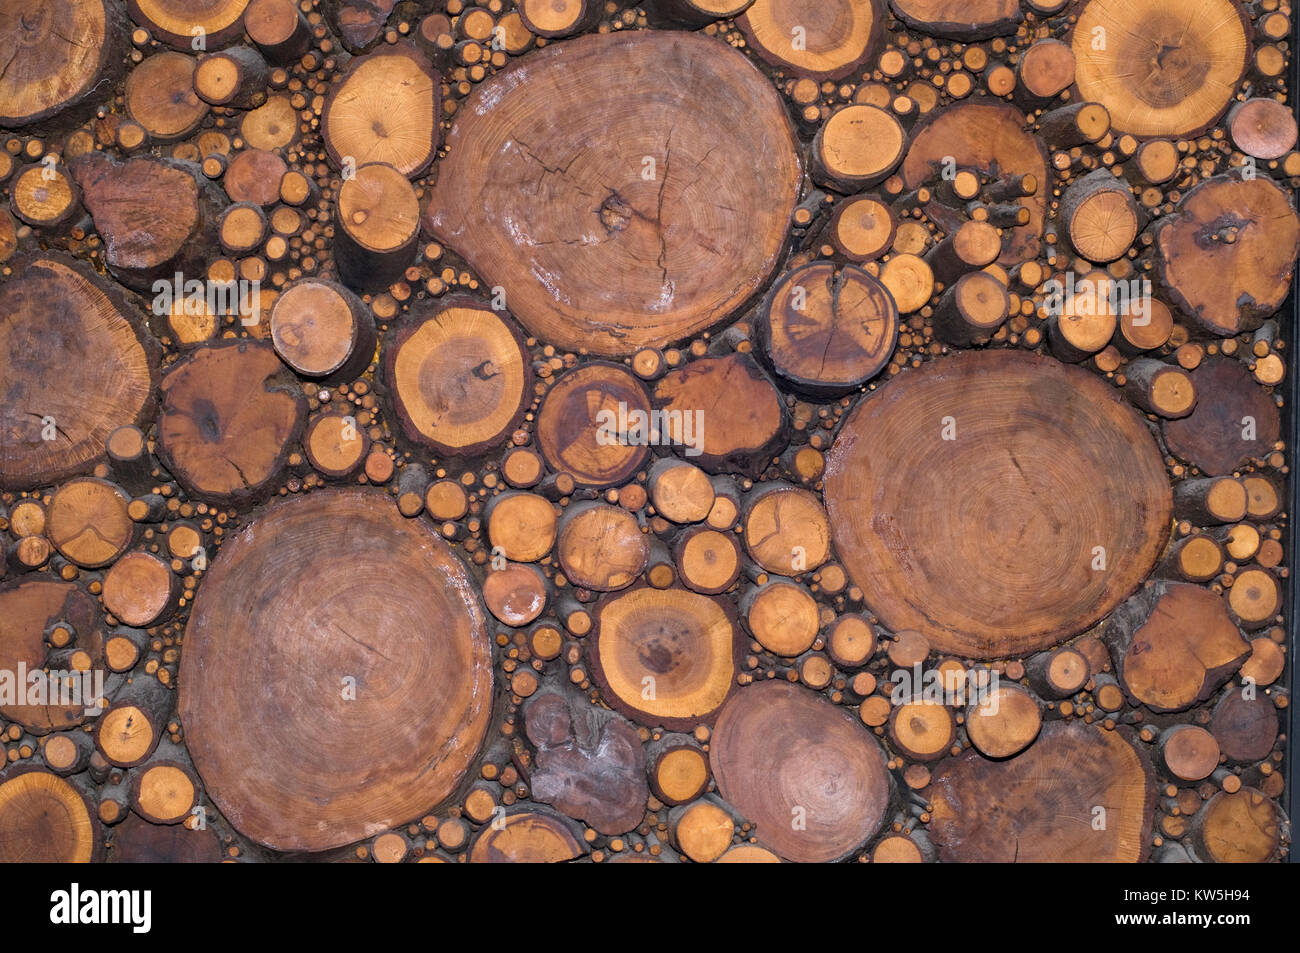 Tableau of cut logs in ceramic Stock Photo